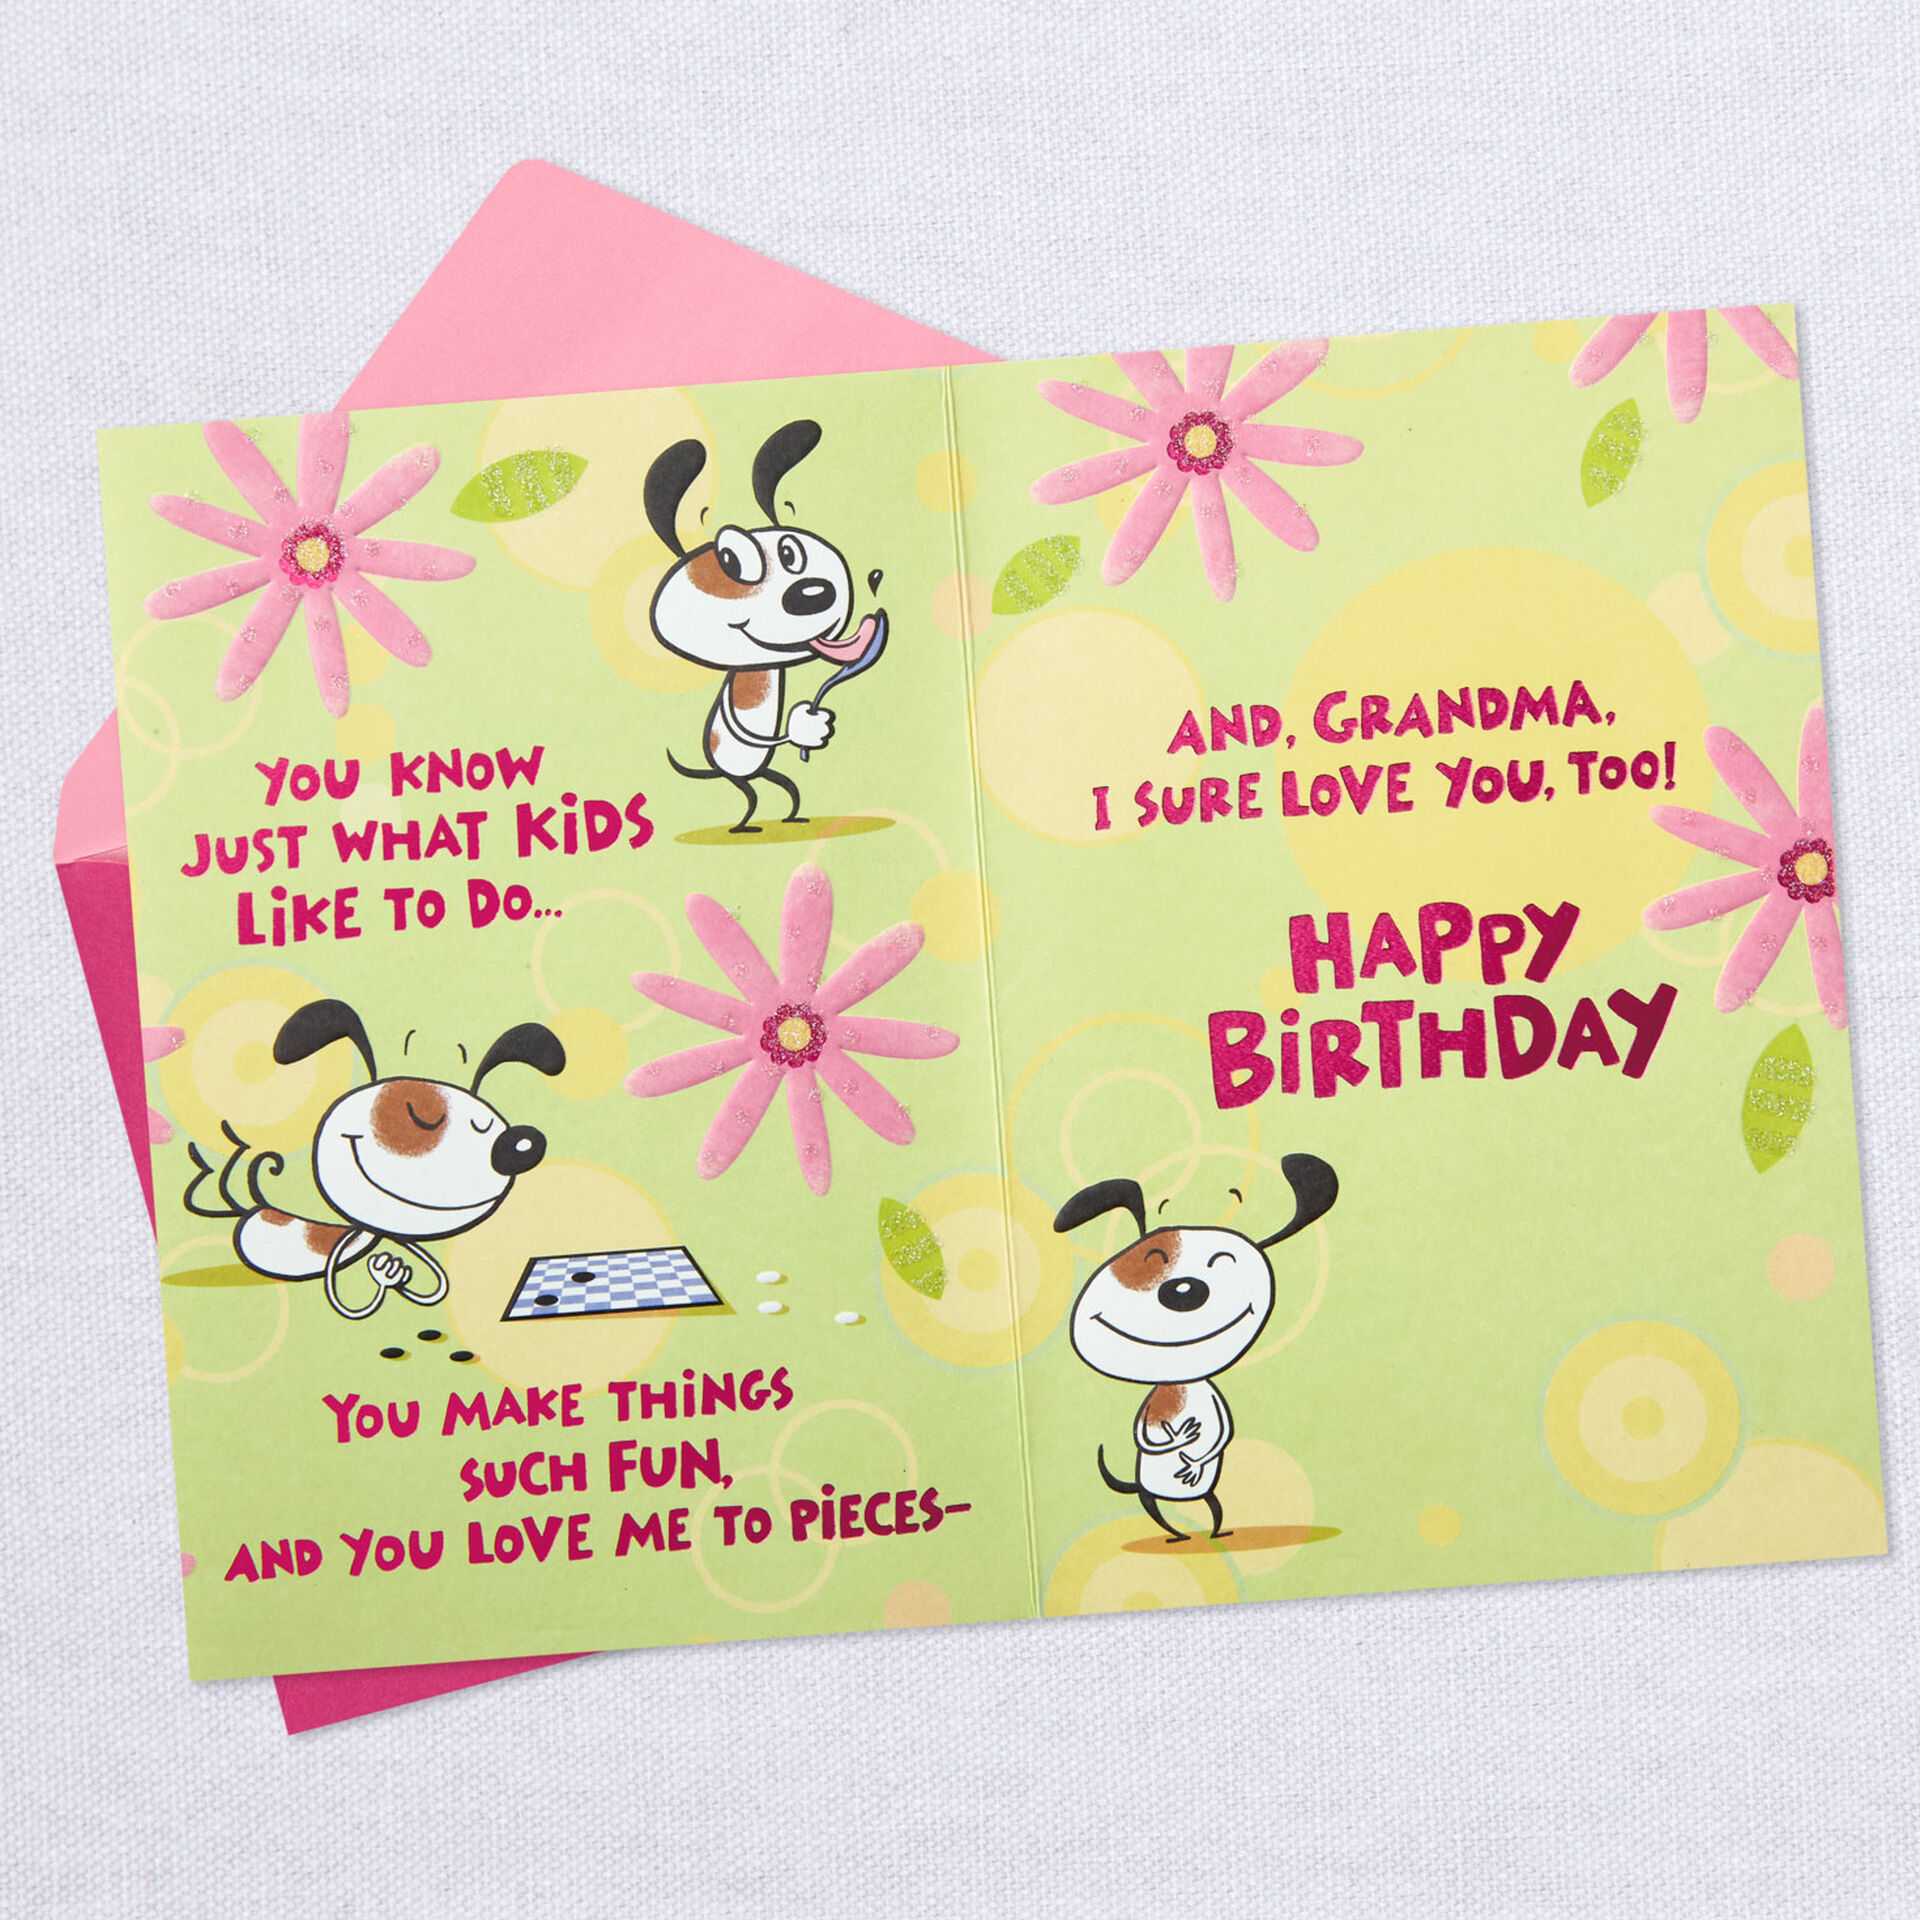 Caron-Dog-Birthday-Card-Grandma_399FBD3739_03